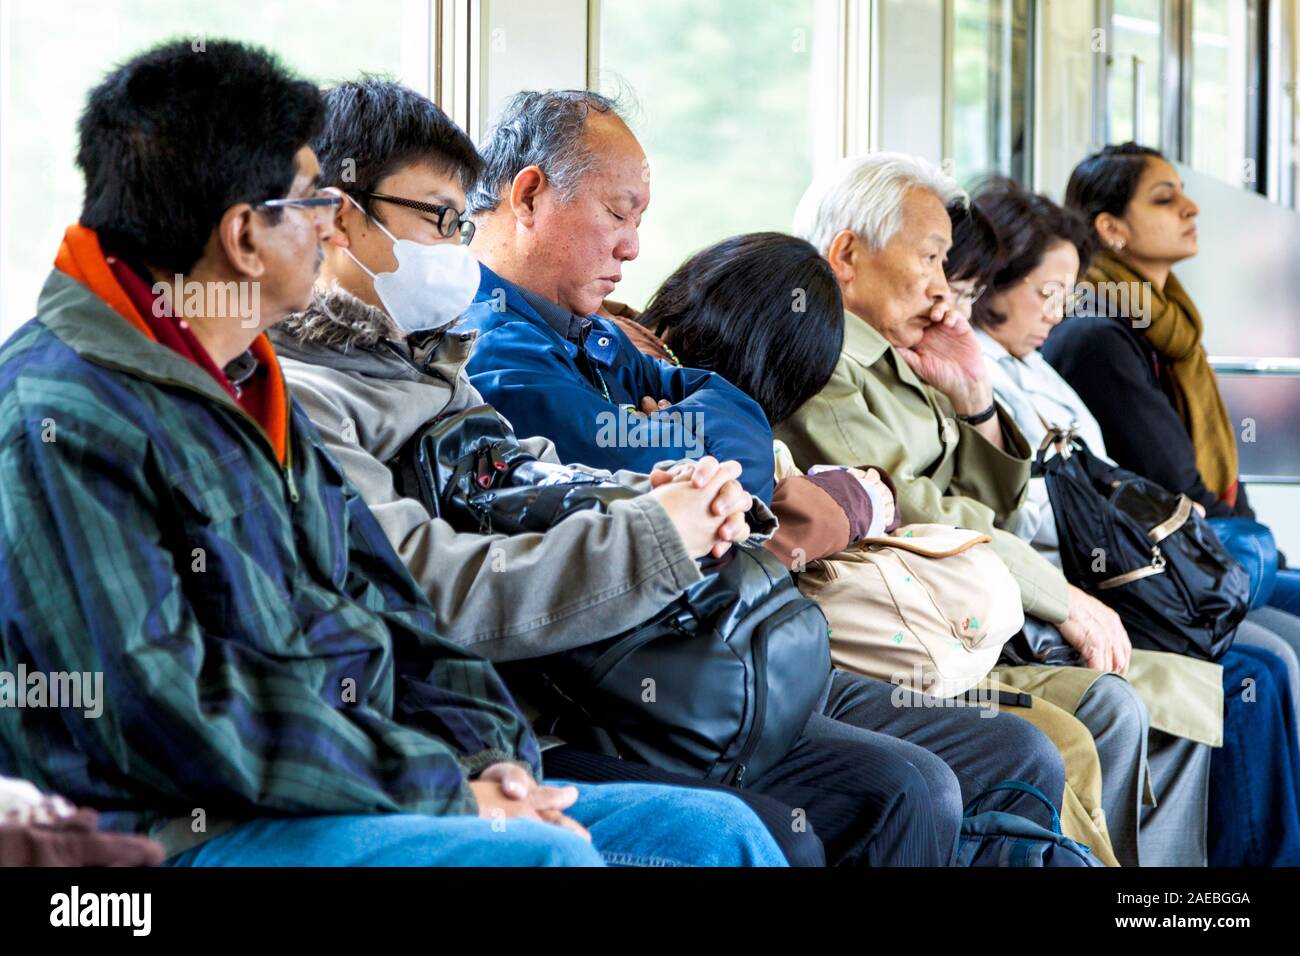 Les gens fatigués de dormir sur un train à Tokyo, Japon Banque D'Images